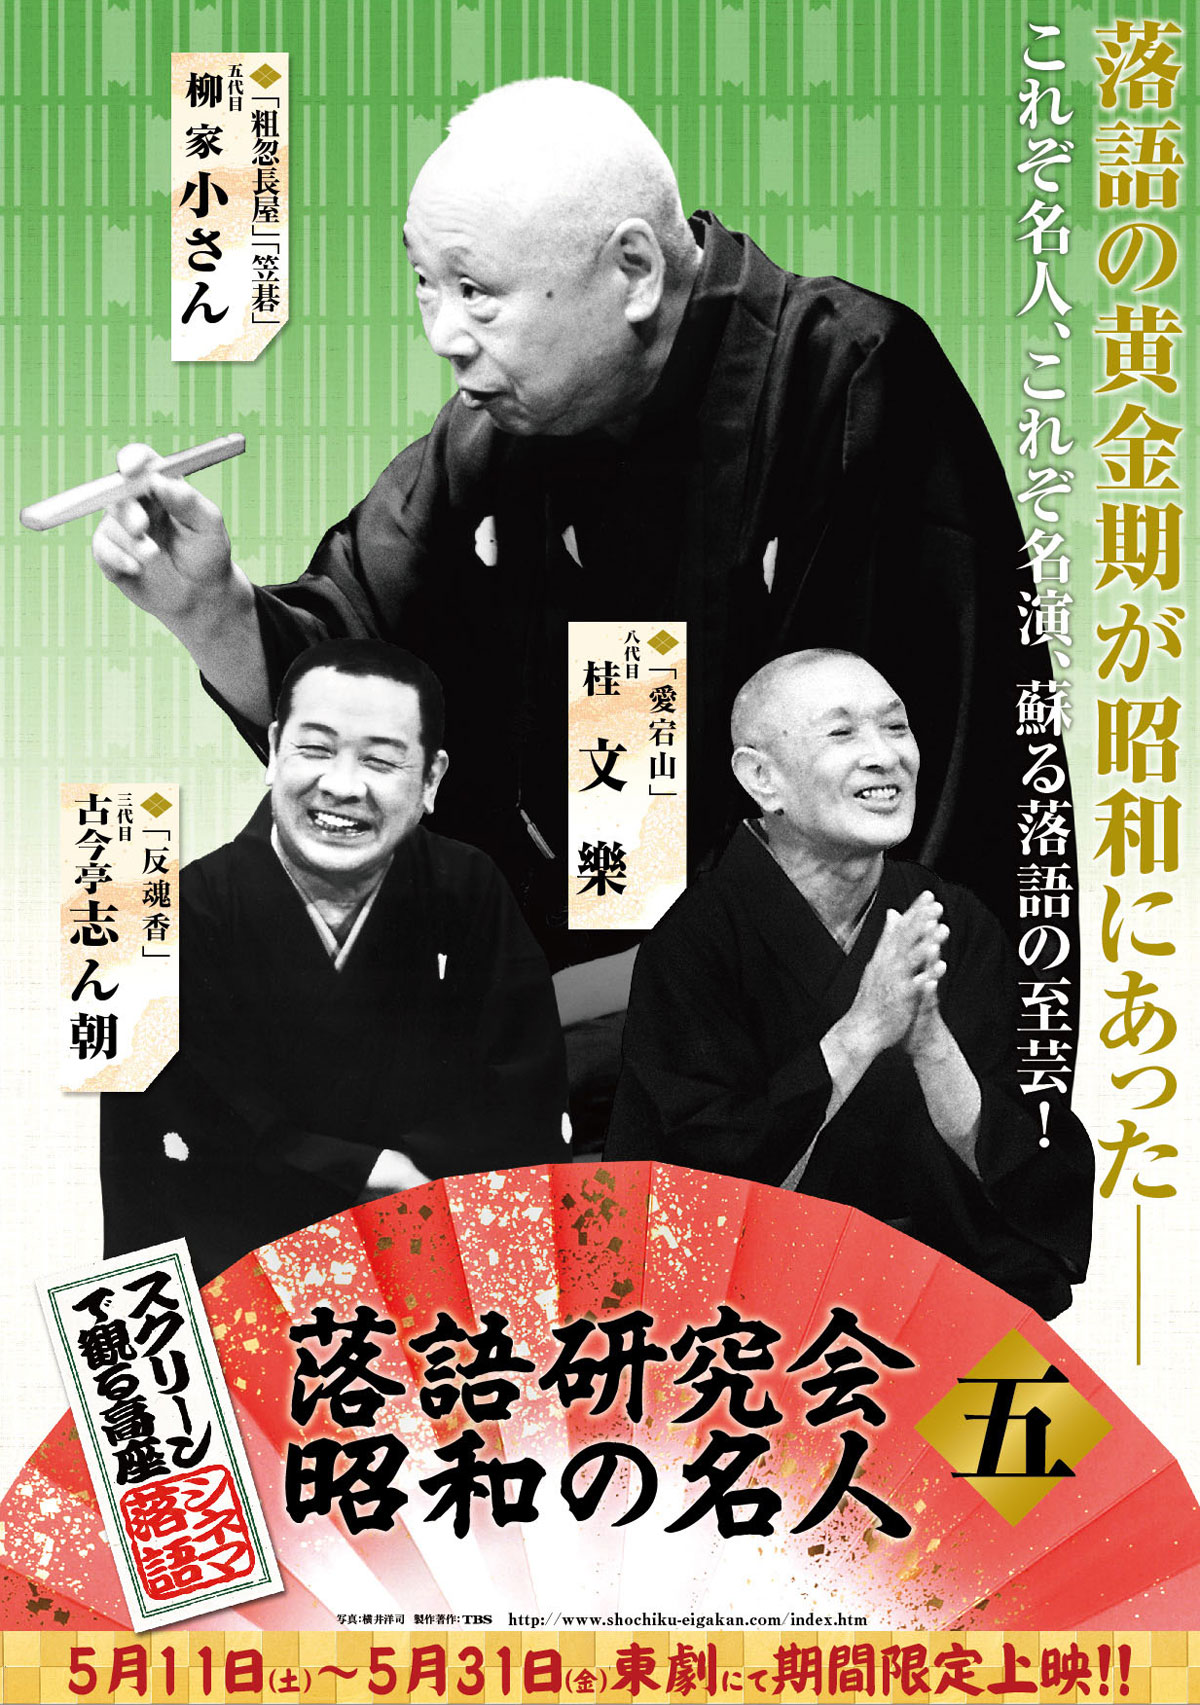 スクリーンで観る高座・シネマ落語「落語研究会　昭和の名人 五」の画像